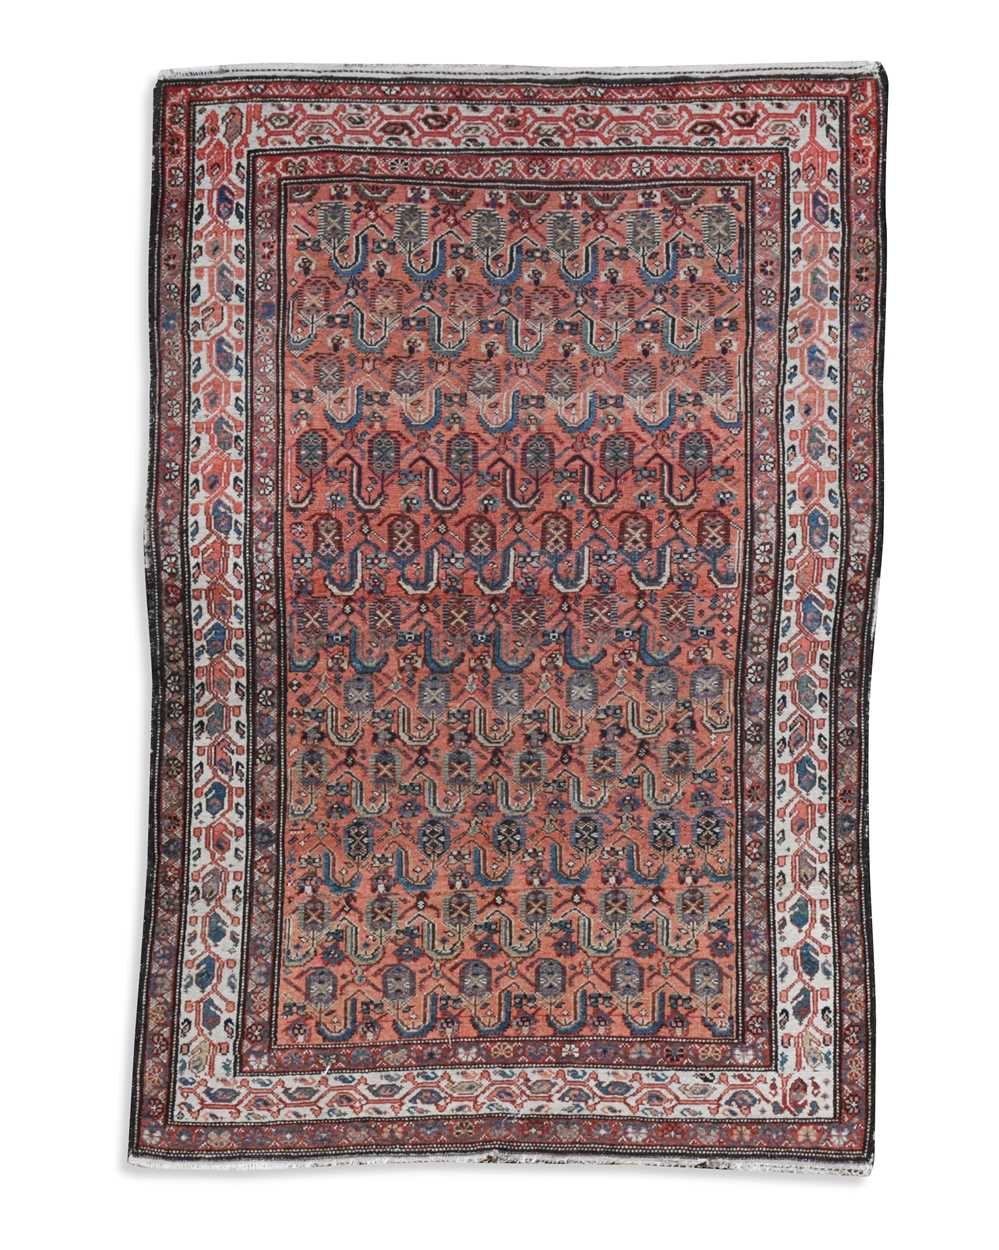 A Kurdish rug, circa 1920,